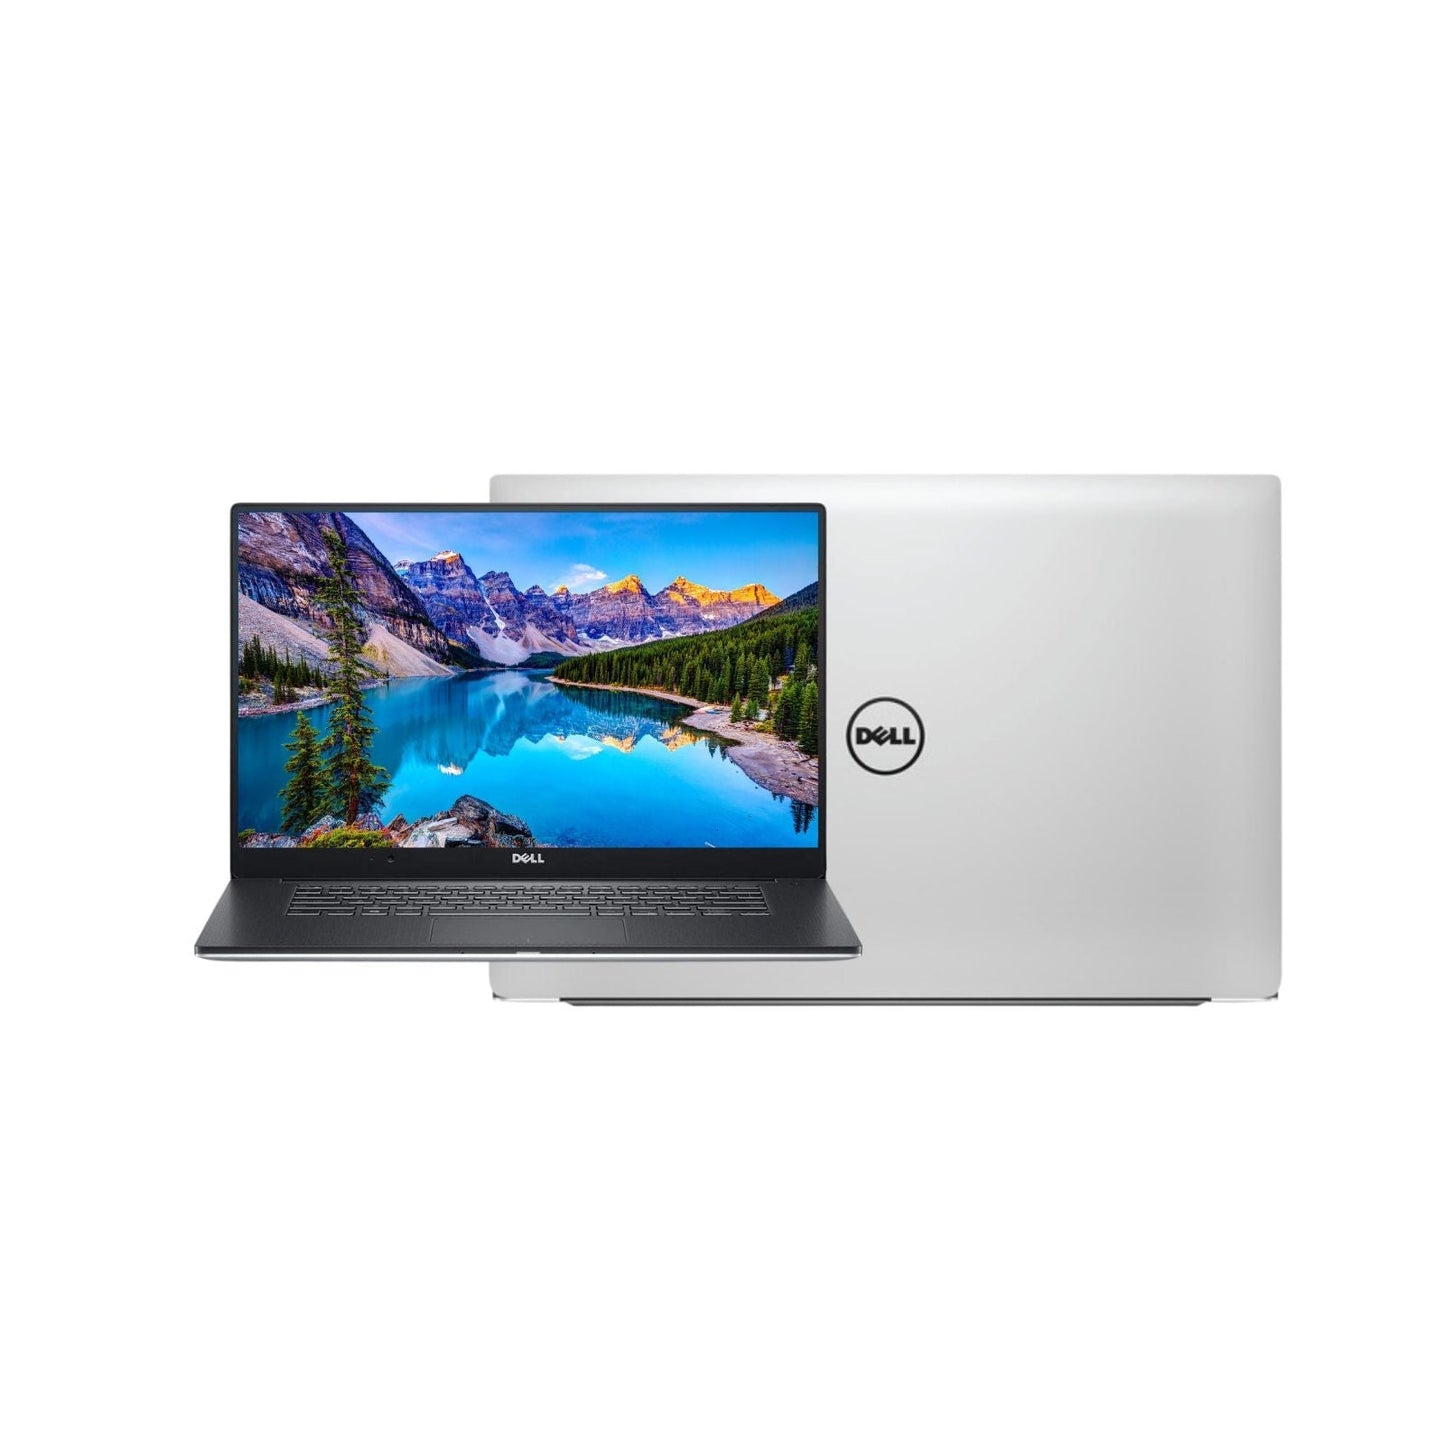 Dell Precision 5540 -15.6 Inch Laptop Touch 4K - Intel Core I7 Gen 9 - 16 GB DDR4 - 612 GB SSD- NVIDIA 4GB - Windows 11